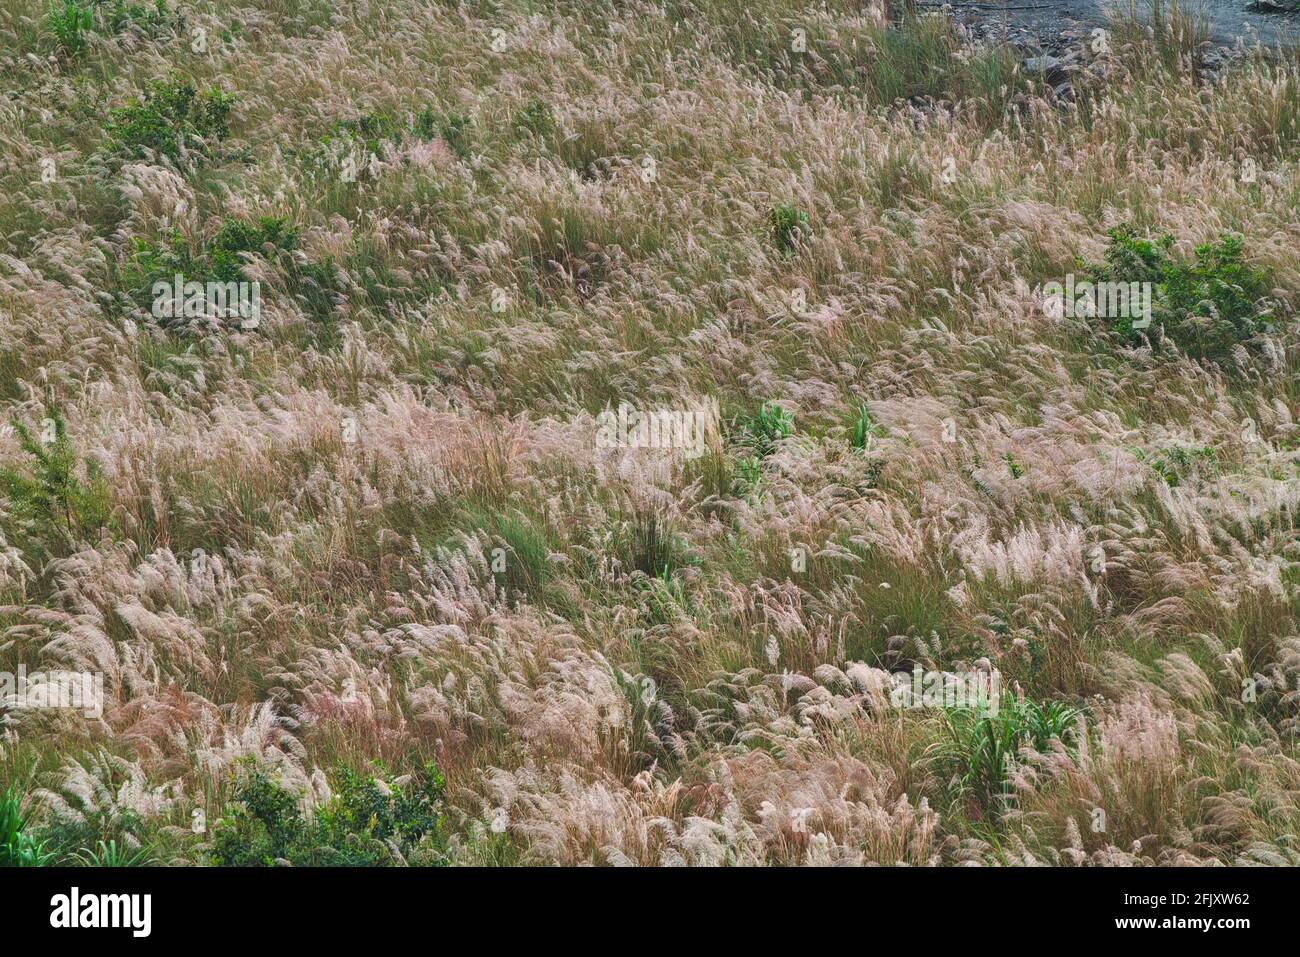 Einige der Schilfblumen wiegen mit dem Wind. Verschiedene Pflanzenarten und Naturlandschaften. Wuling Farm im Winter, Taiwan. Dezember 2020. Stockfoto